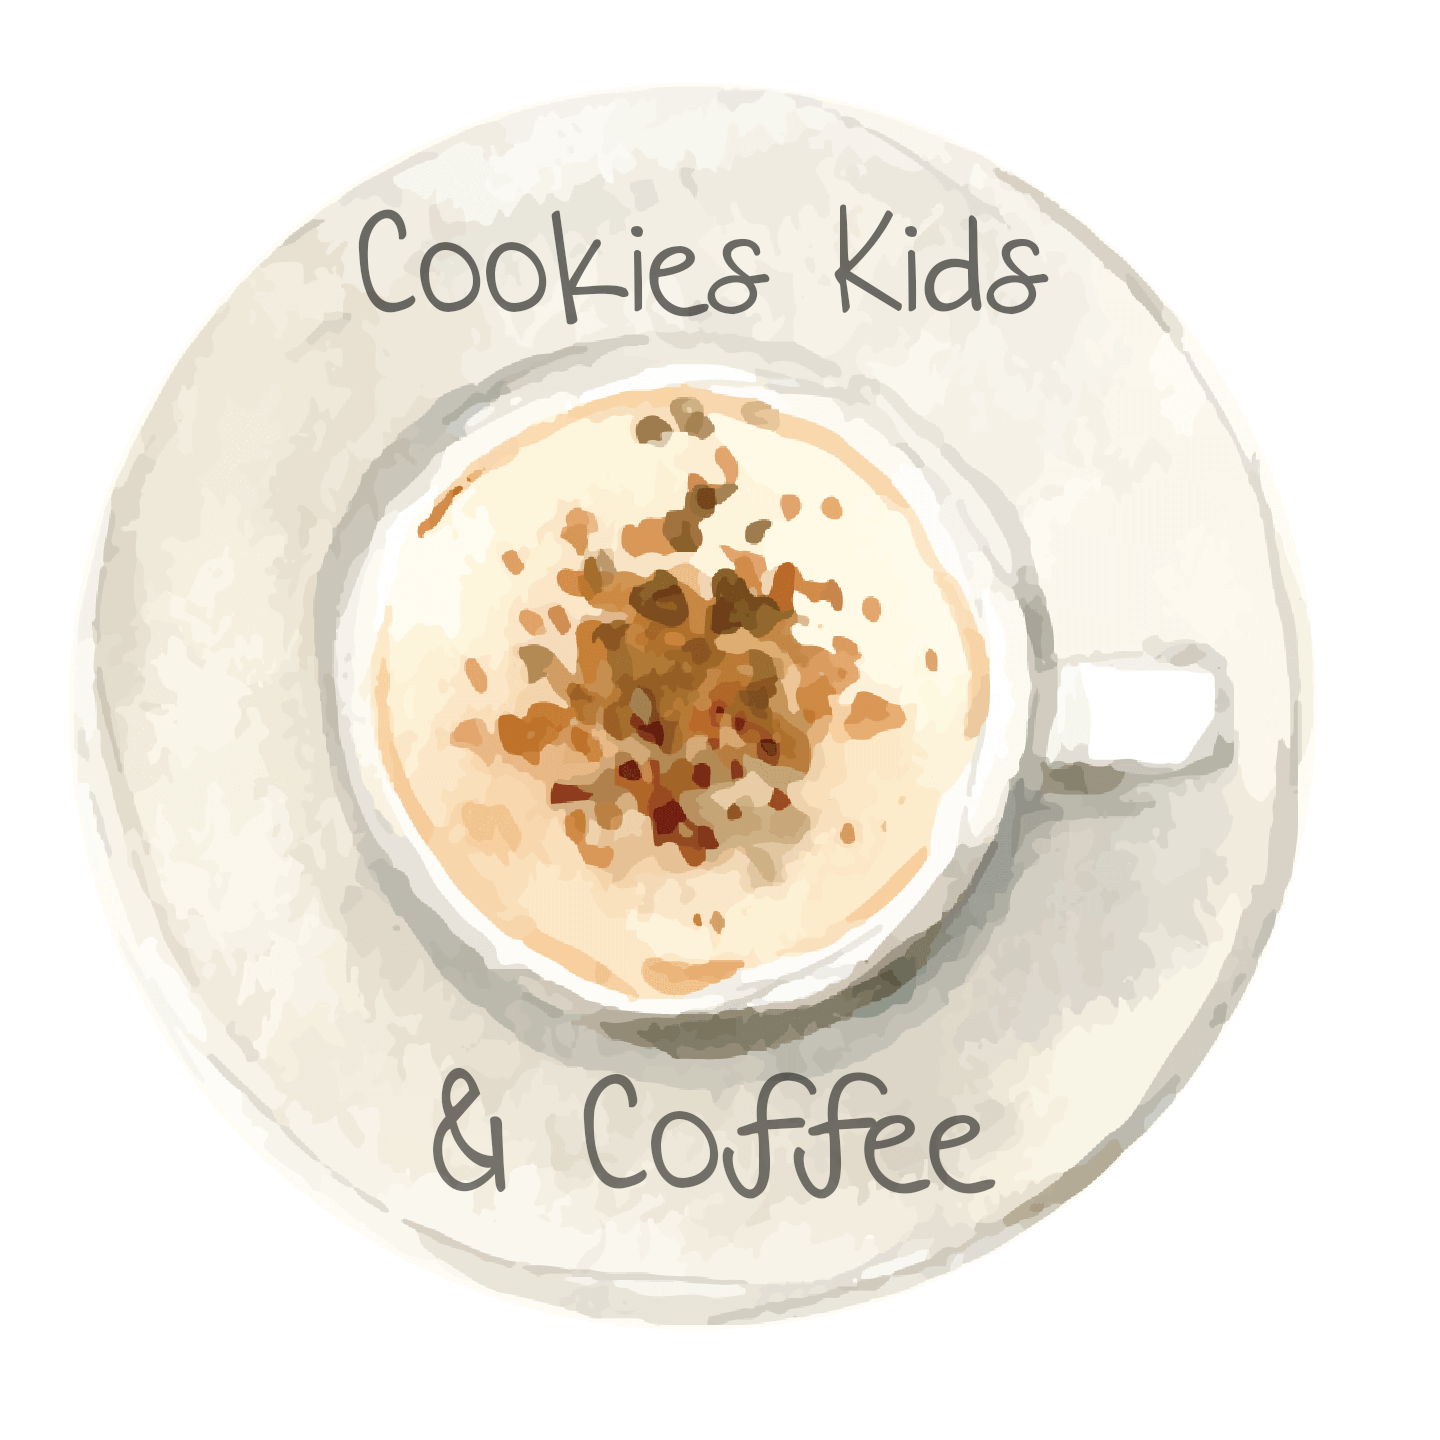 | Cookies Kids & Coffee |